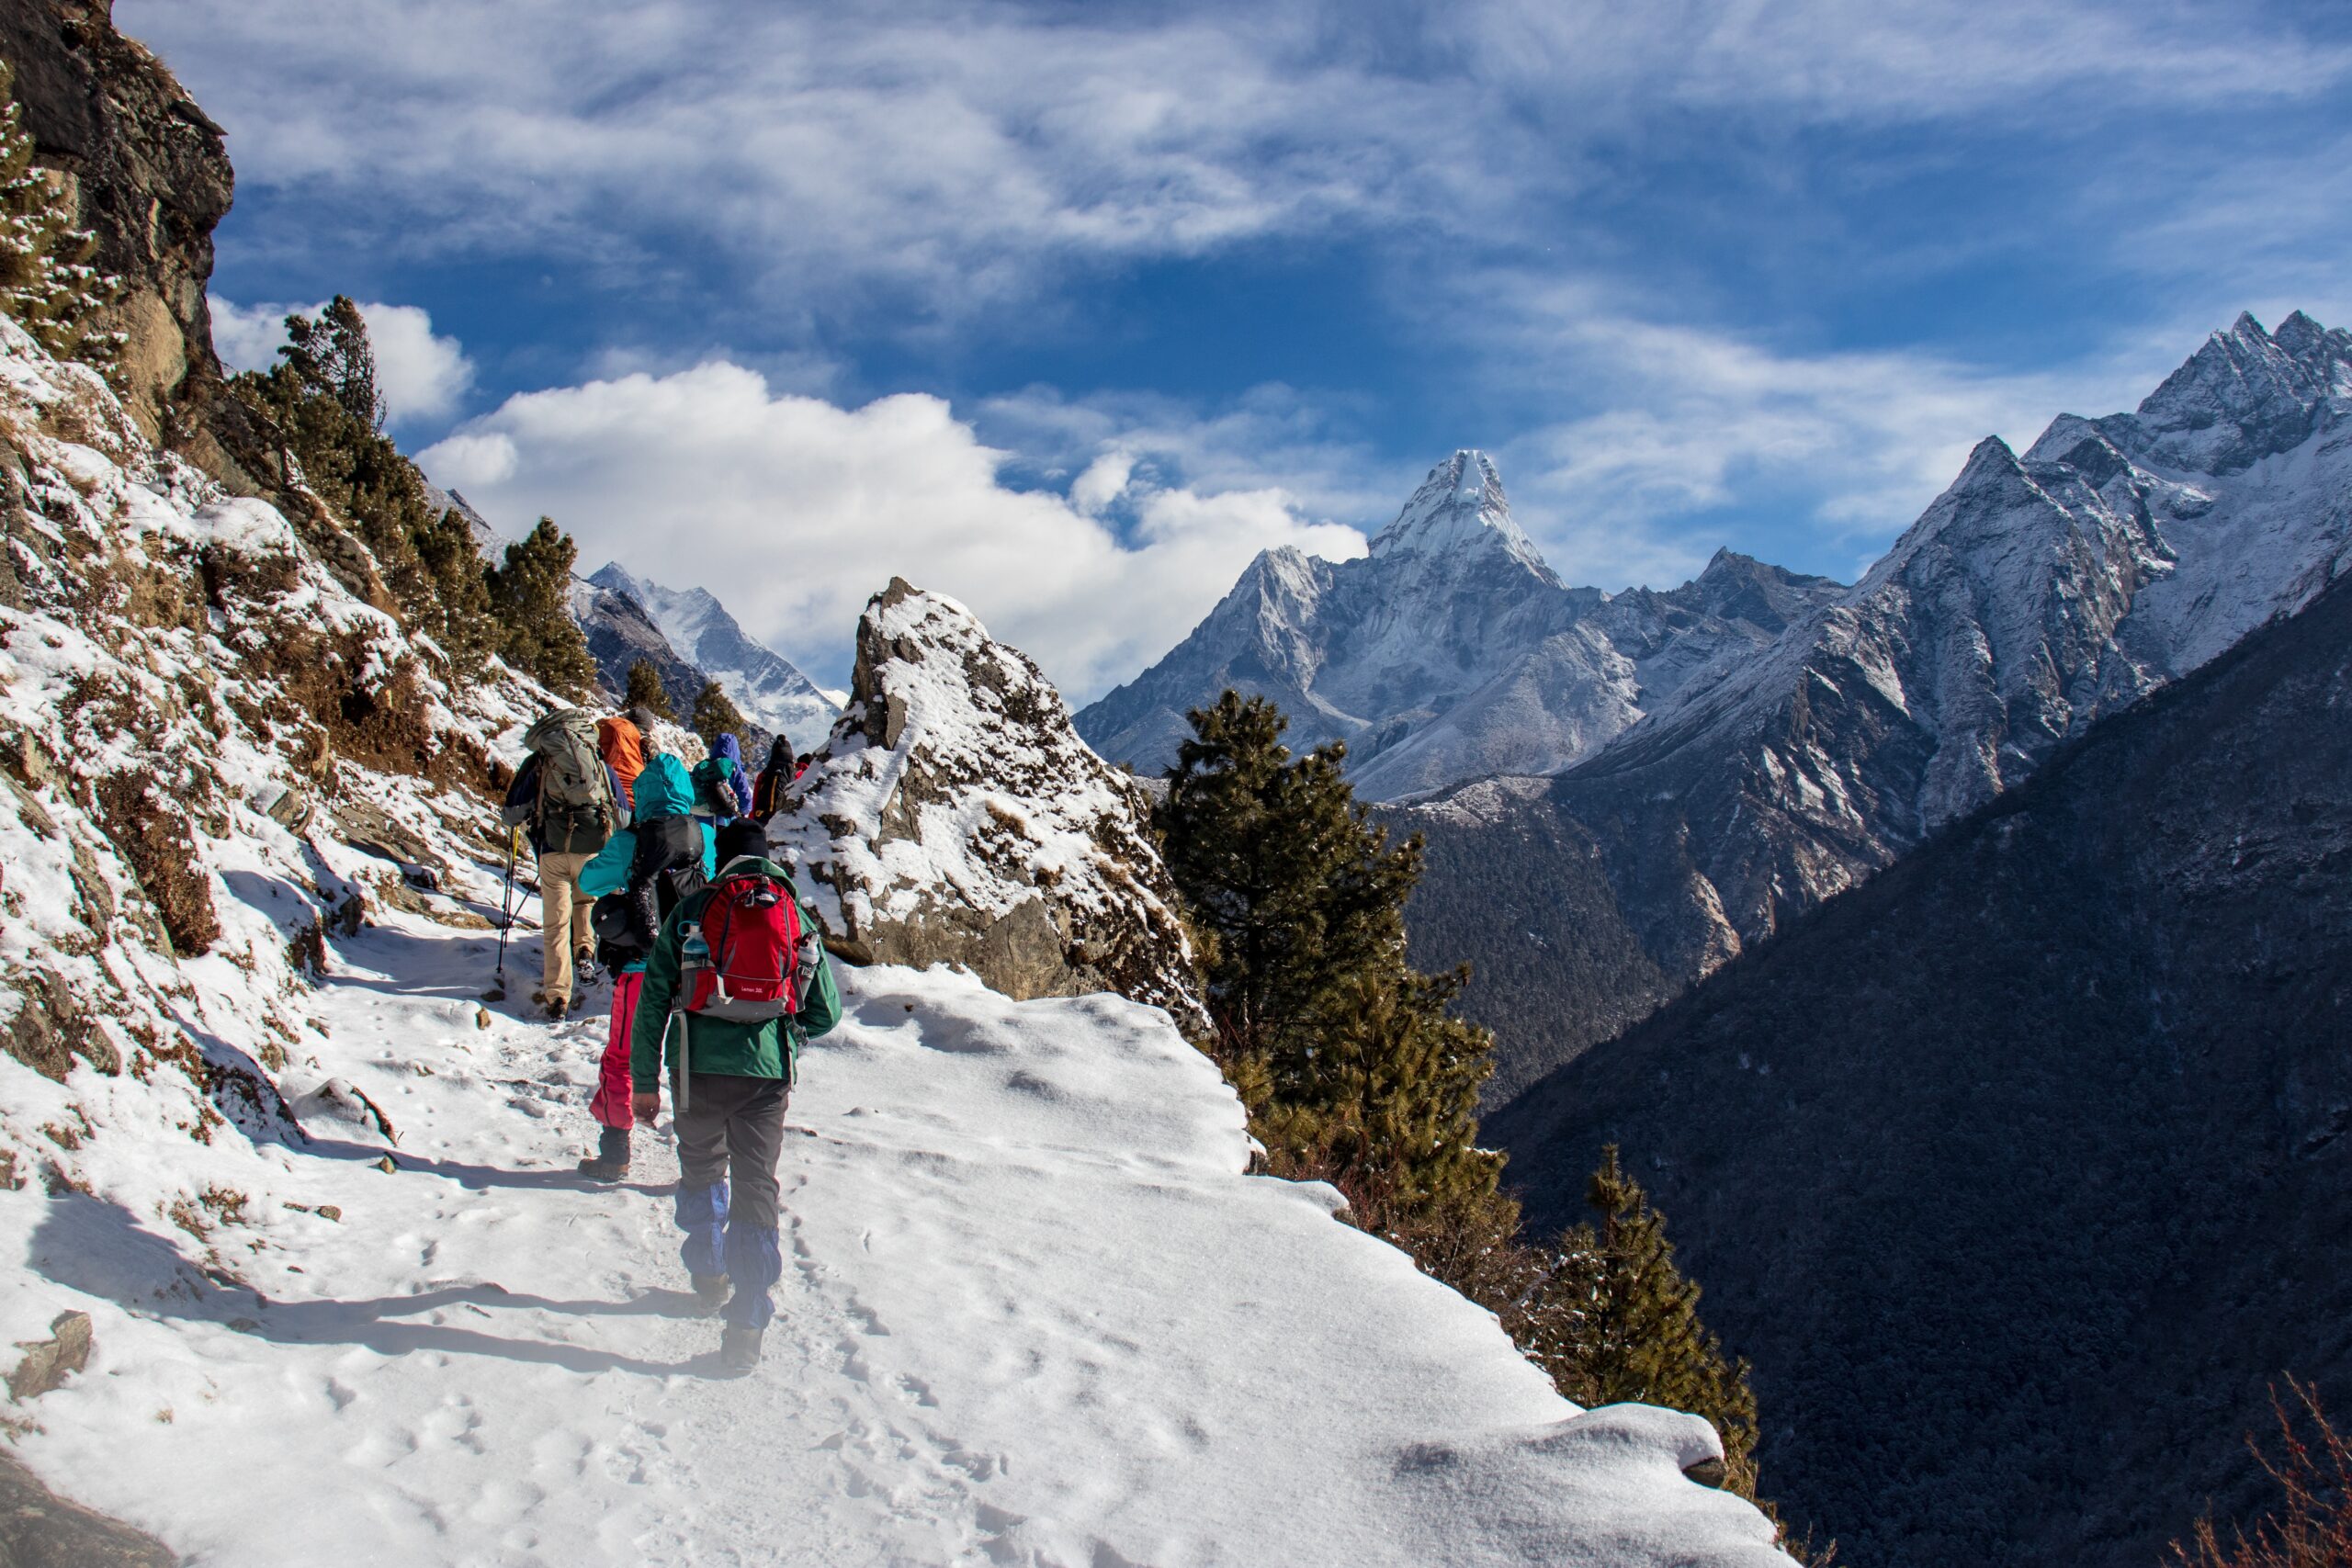 trekking in nepal in march